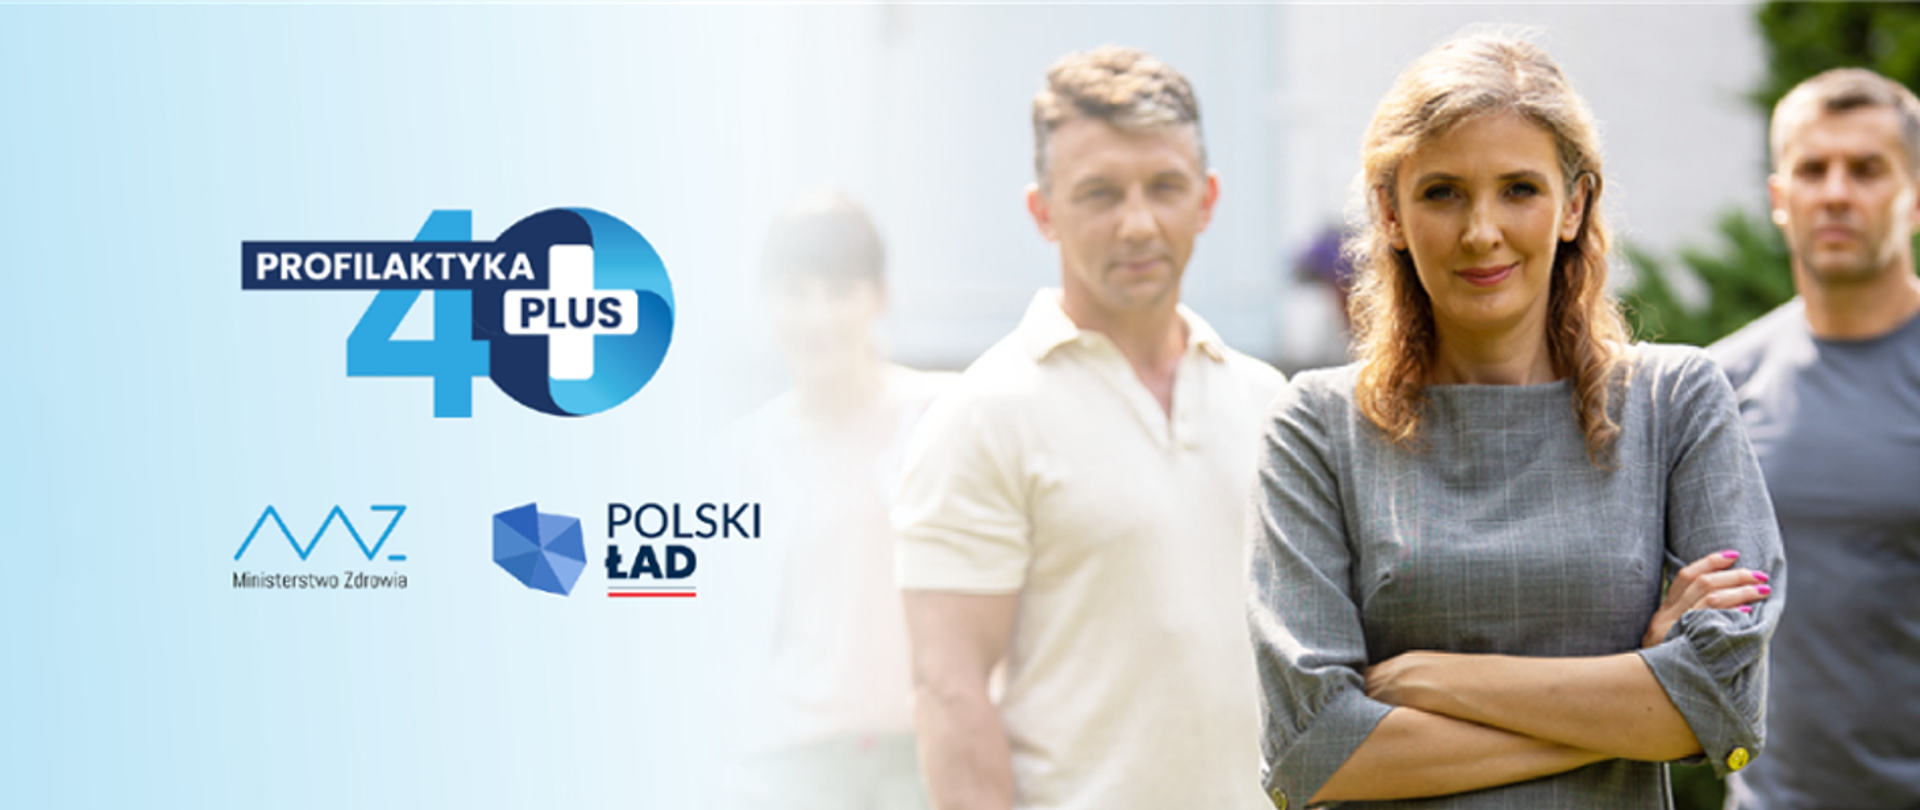 Na zdjęciu 3 osoby, obok napis "Profilaktyka 40 Plus", Ministerstwo Zdrowia, Polski Ład